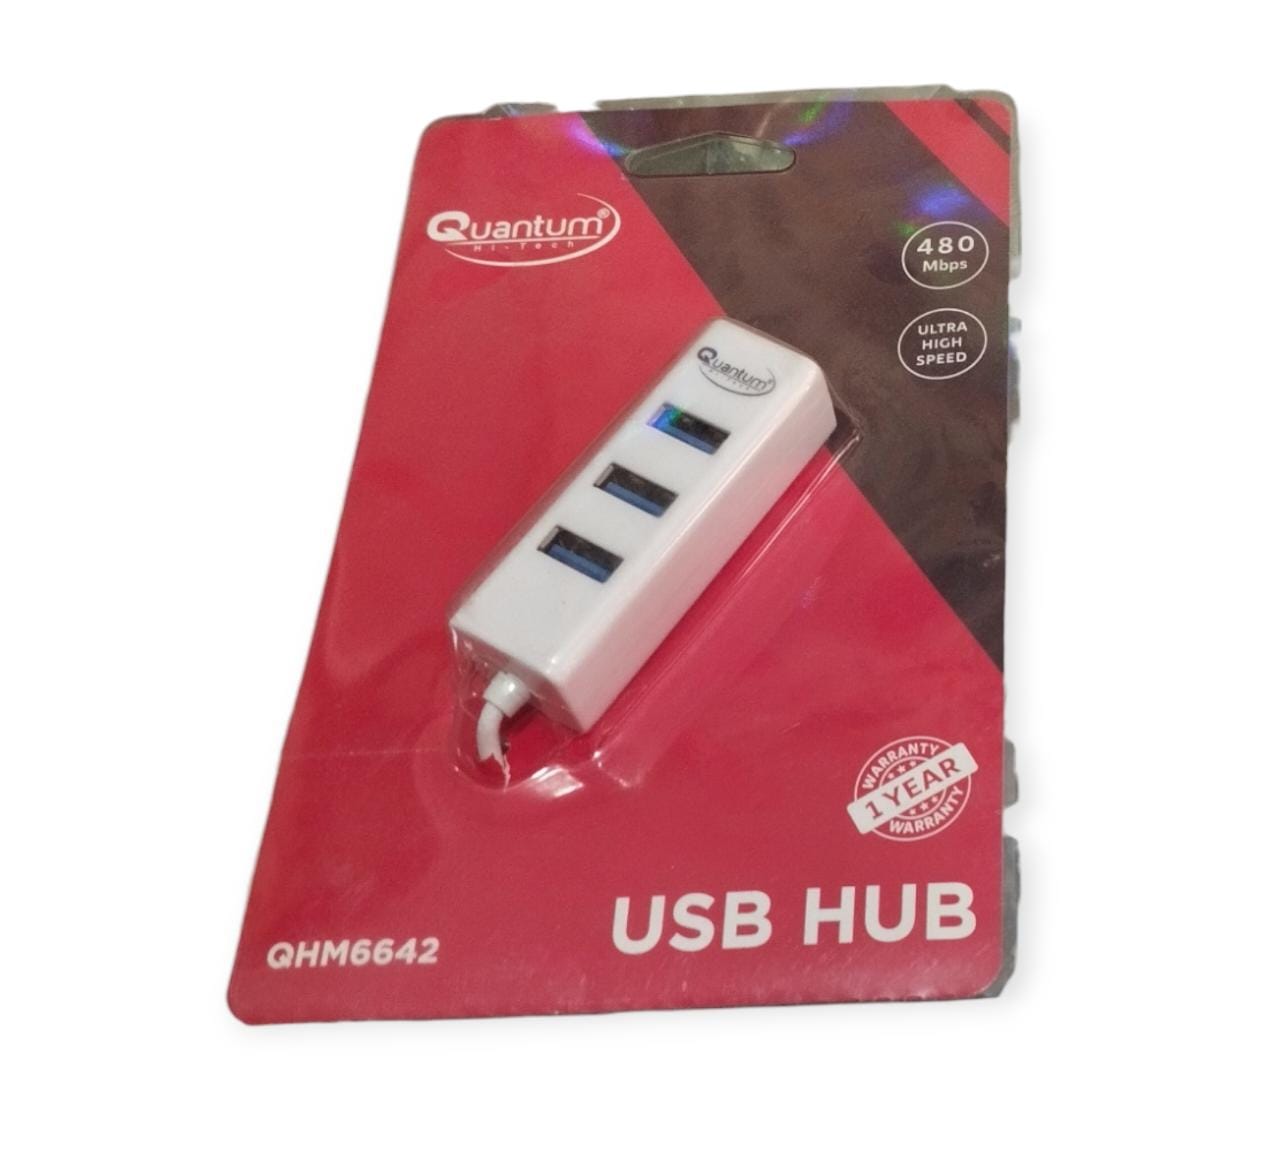 Quantum USB hub 